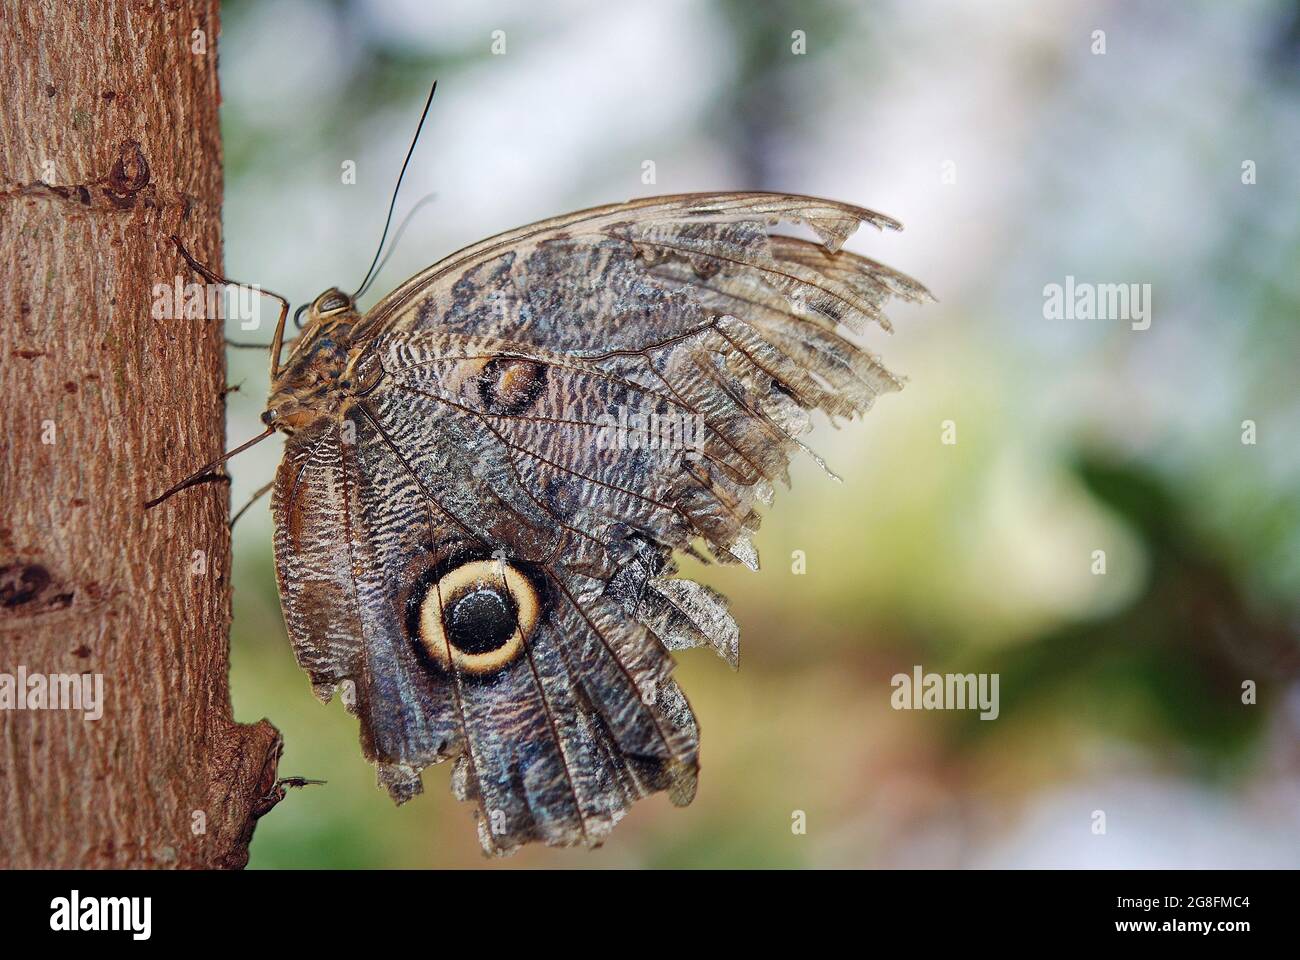 Mariposas del mundo, mariposa de búho con alas rasgadas tras ataques de aves Foto de stock